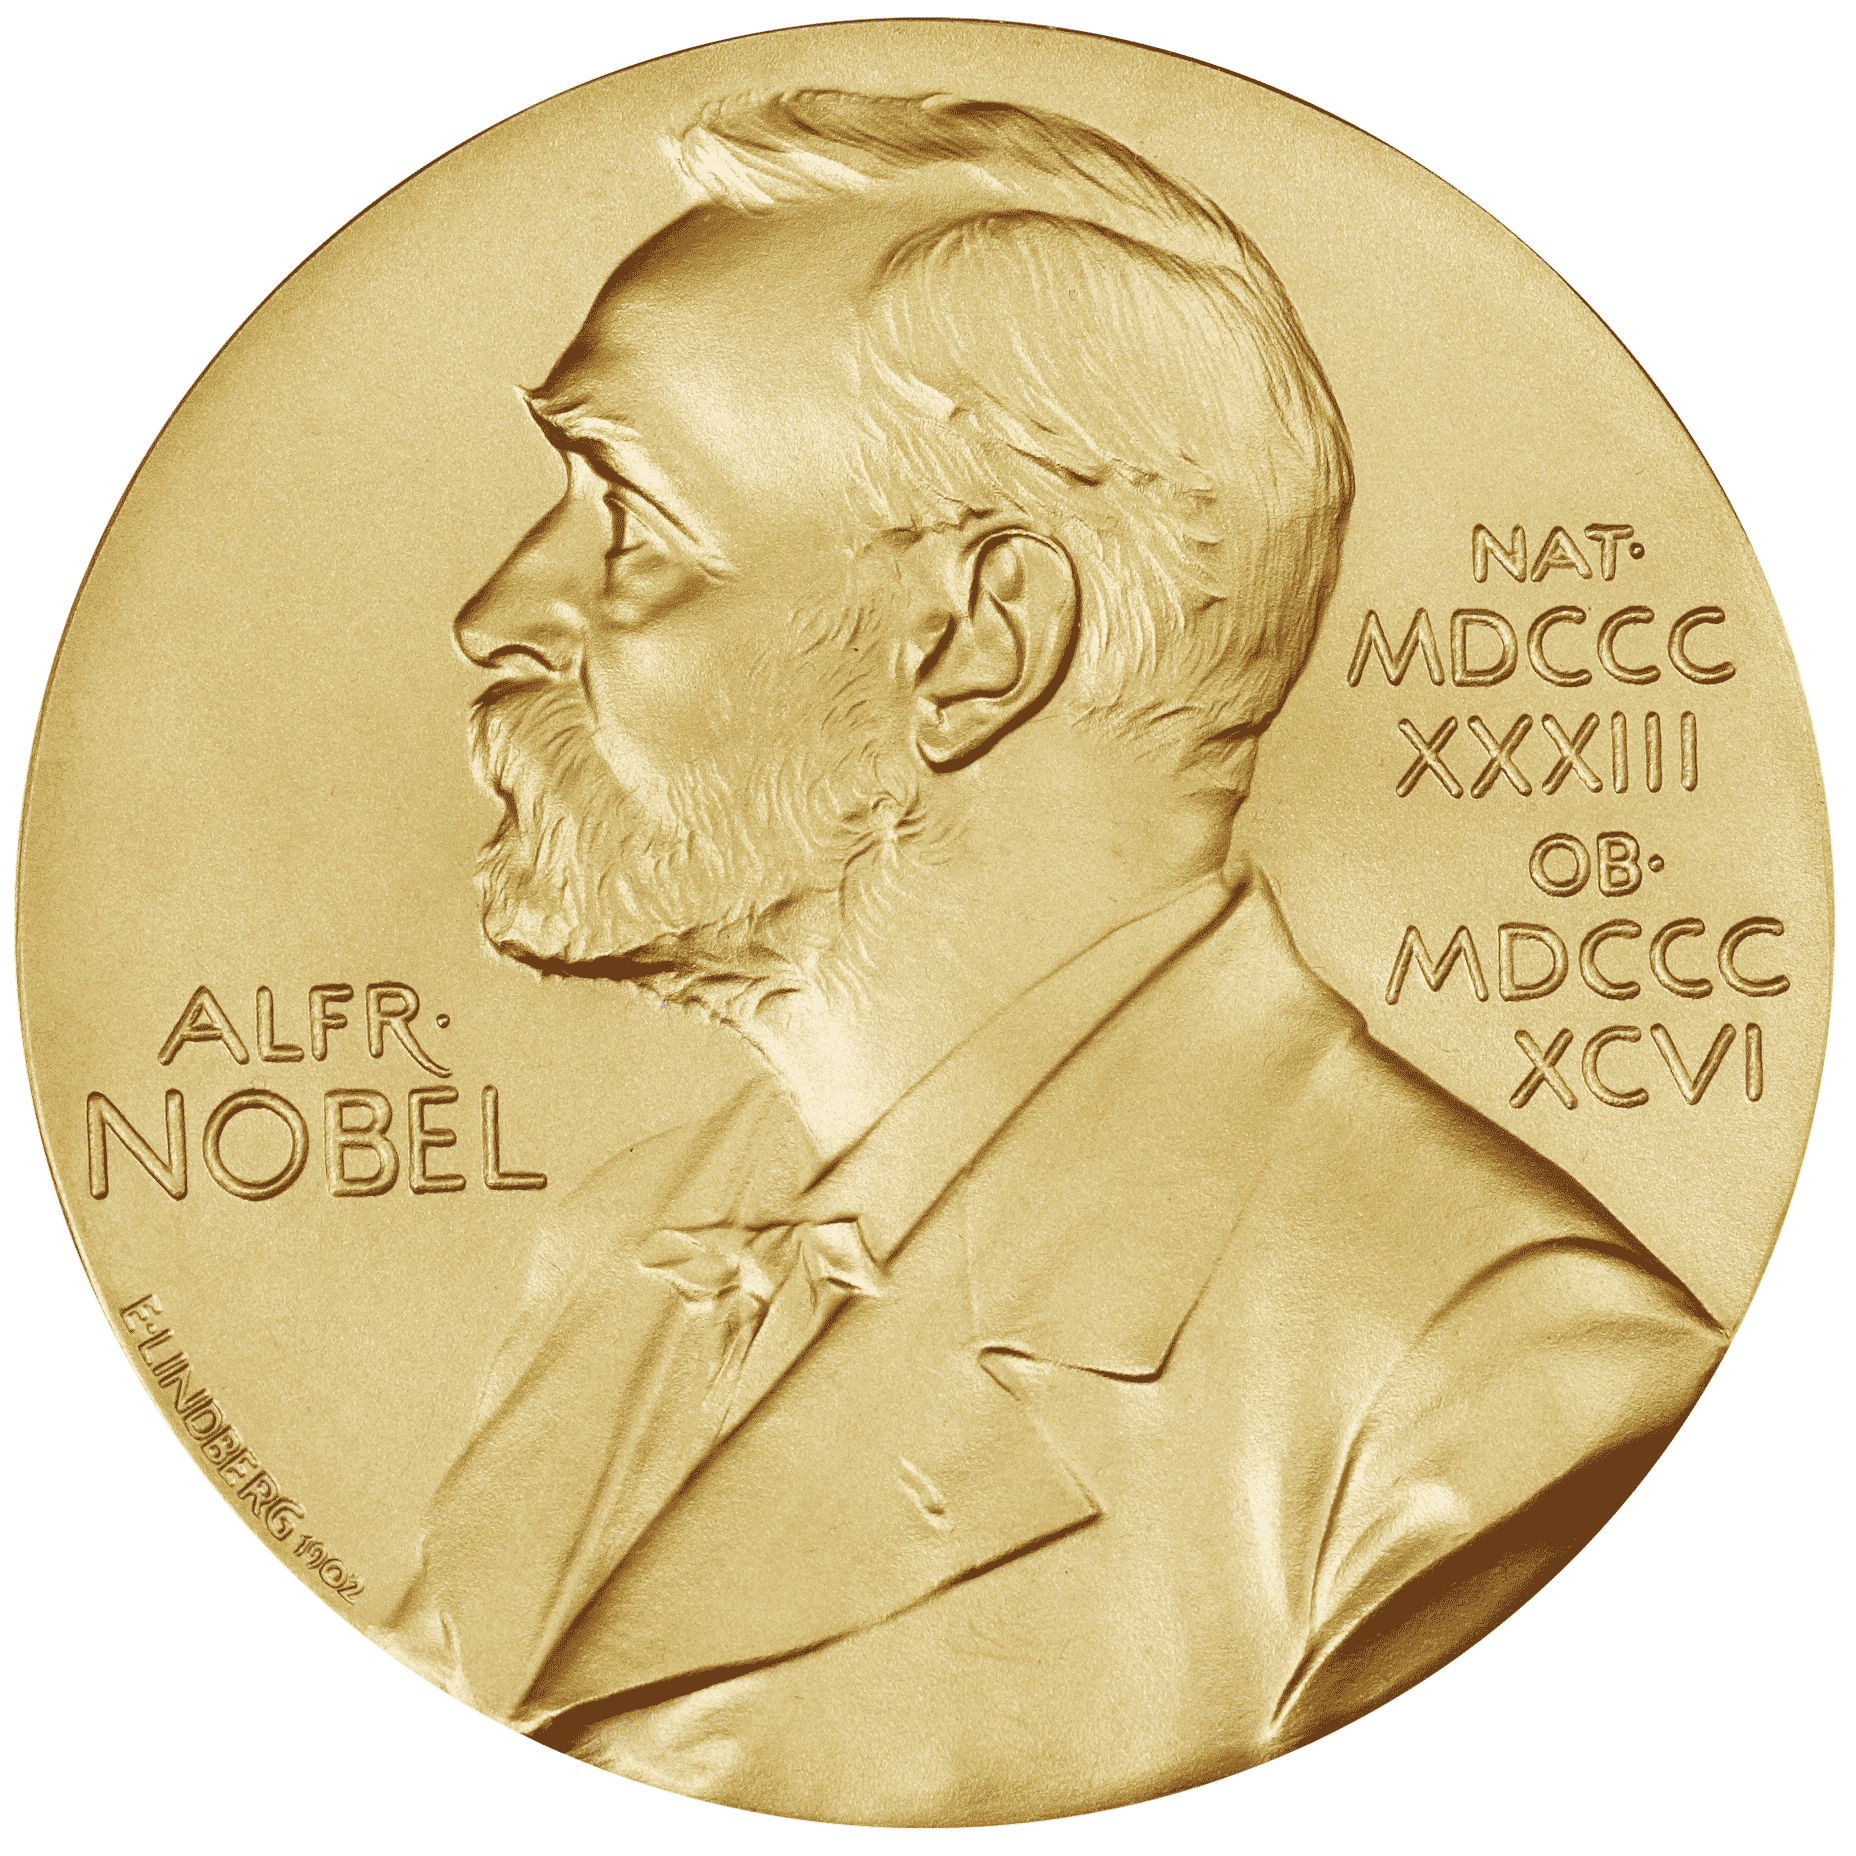 Nobel Prize – Letters from Sweden